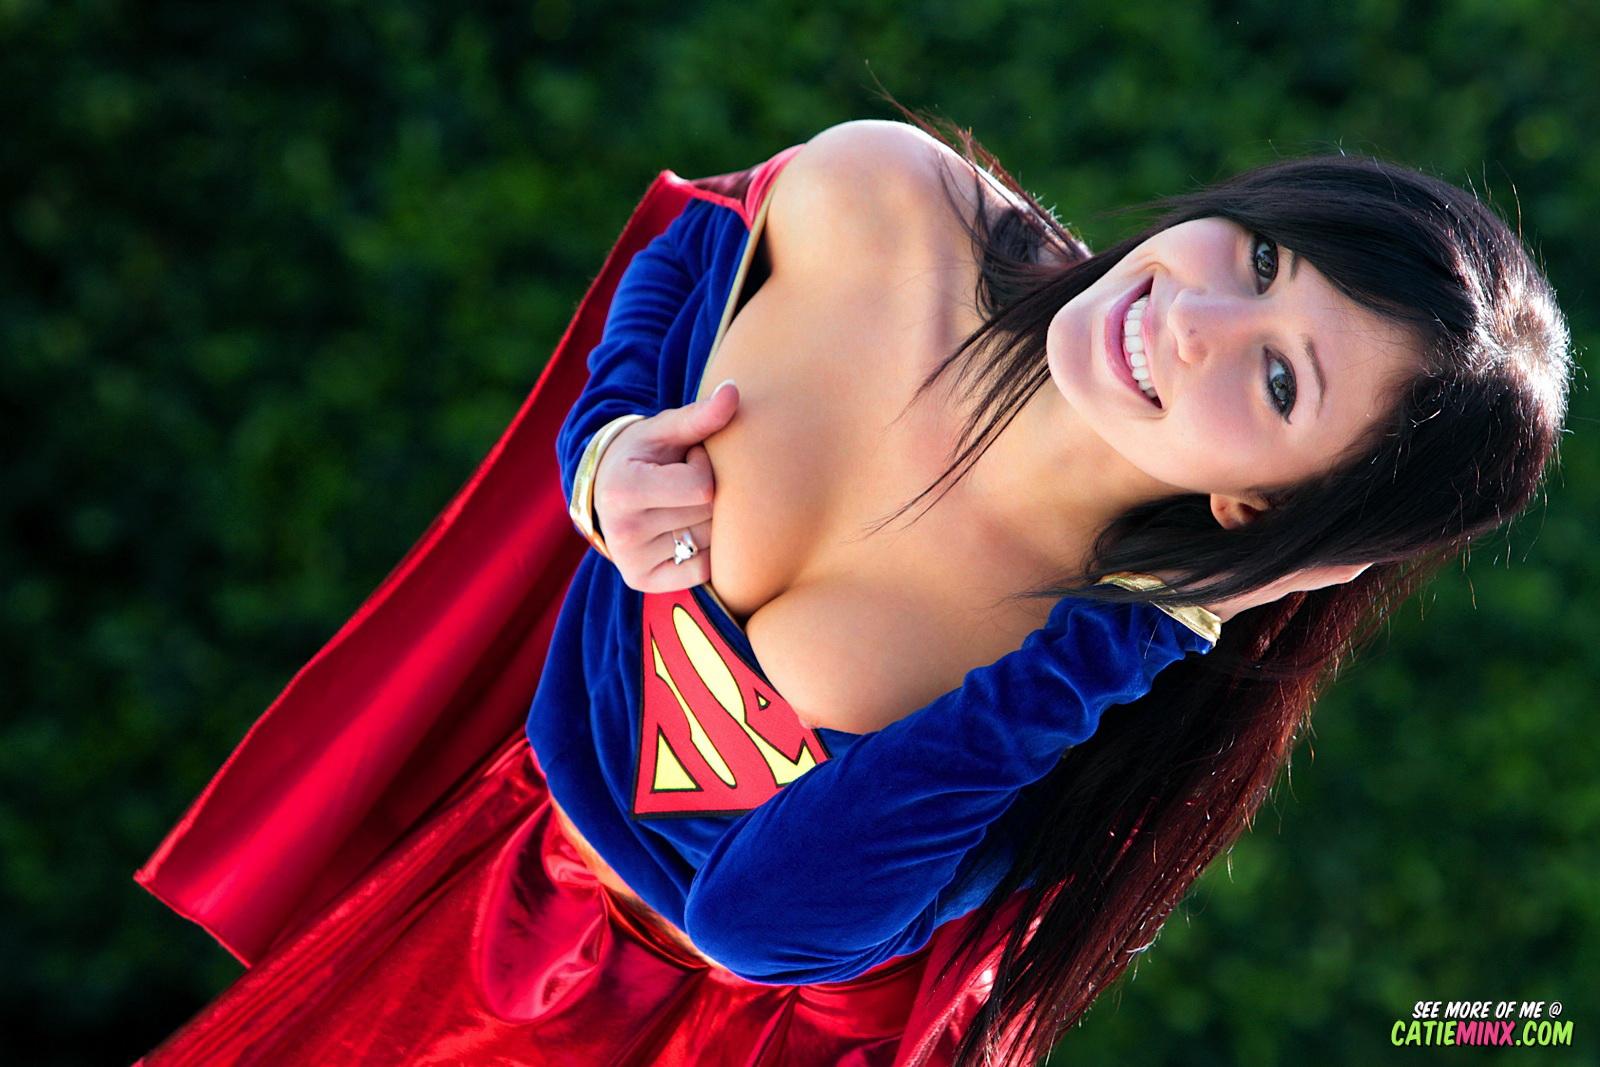 La nerd dai modi gentili Catie Minx rivela i suoi poteri super cattivi come supergirl
 #53722938